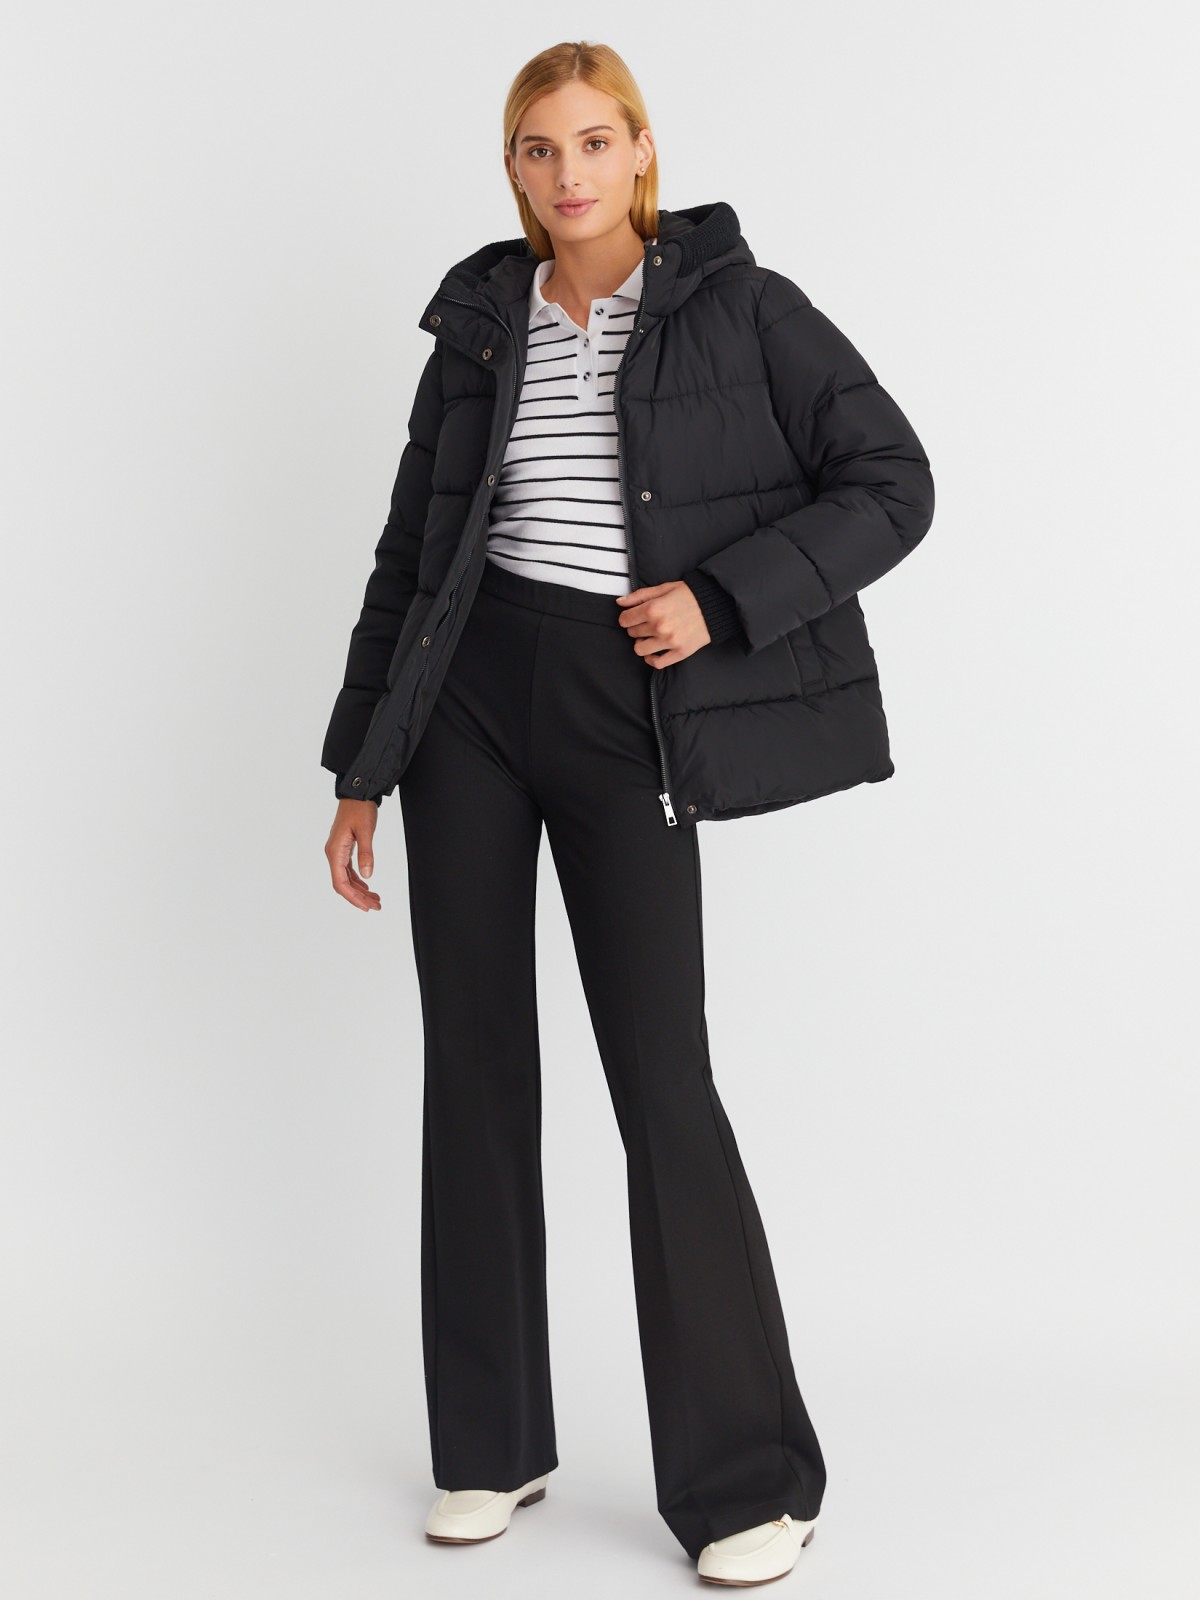 Тёплая стёганая куртка с капюшоном и внутренними манжетами-риб zolla 023345102064, цвет черный, размер S - фото 2